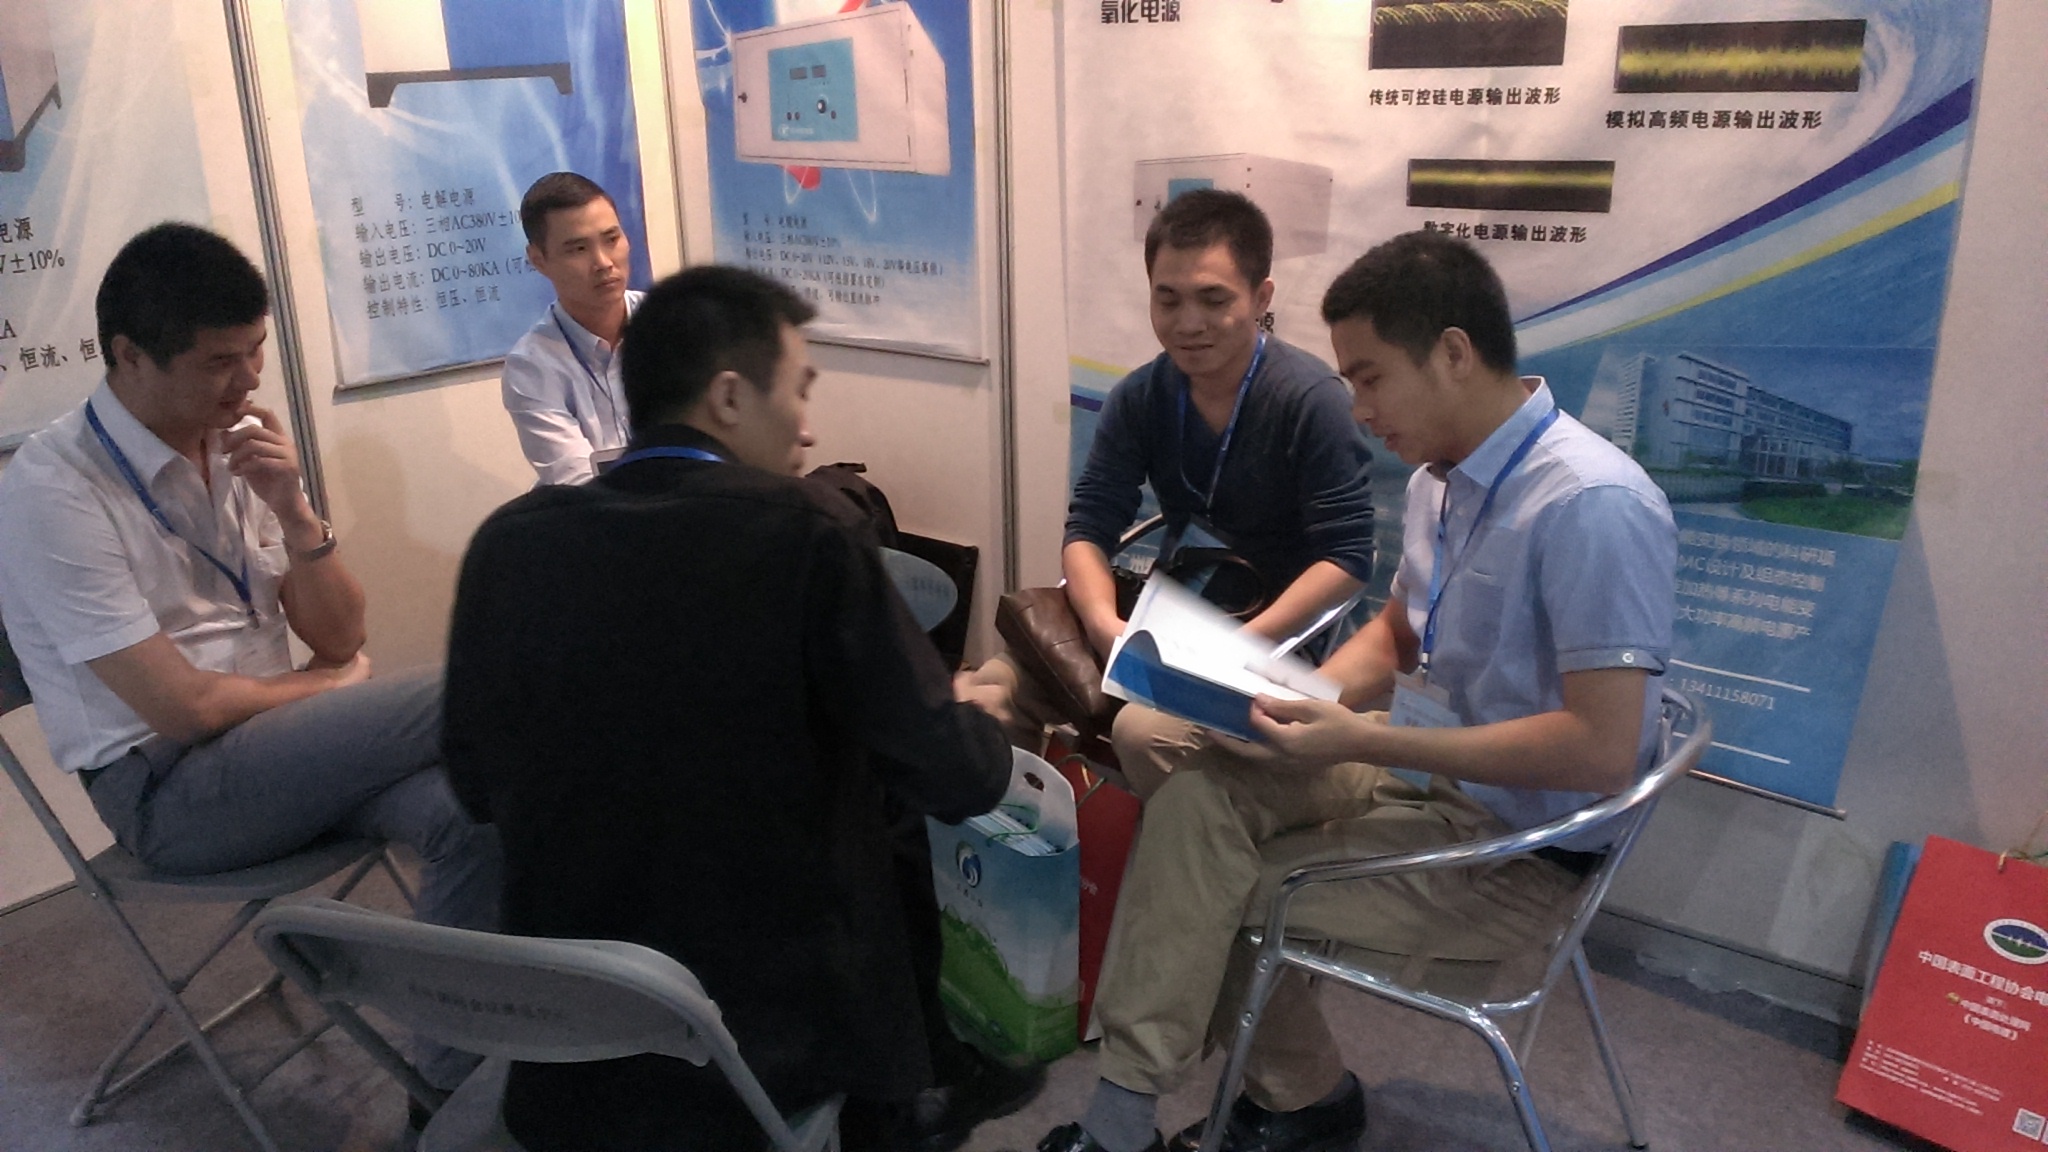 广州爱申特电源科技有限公司参加2014年重庆国际电镀、涂装展会